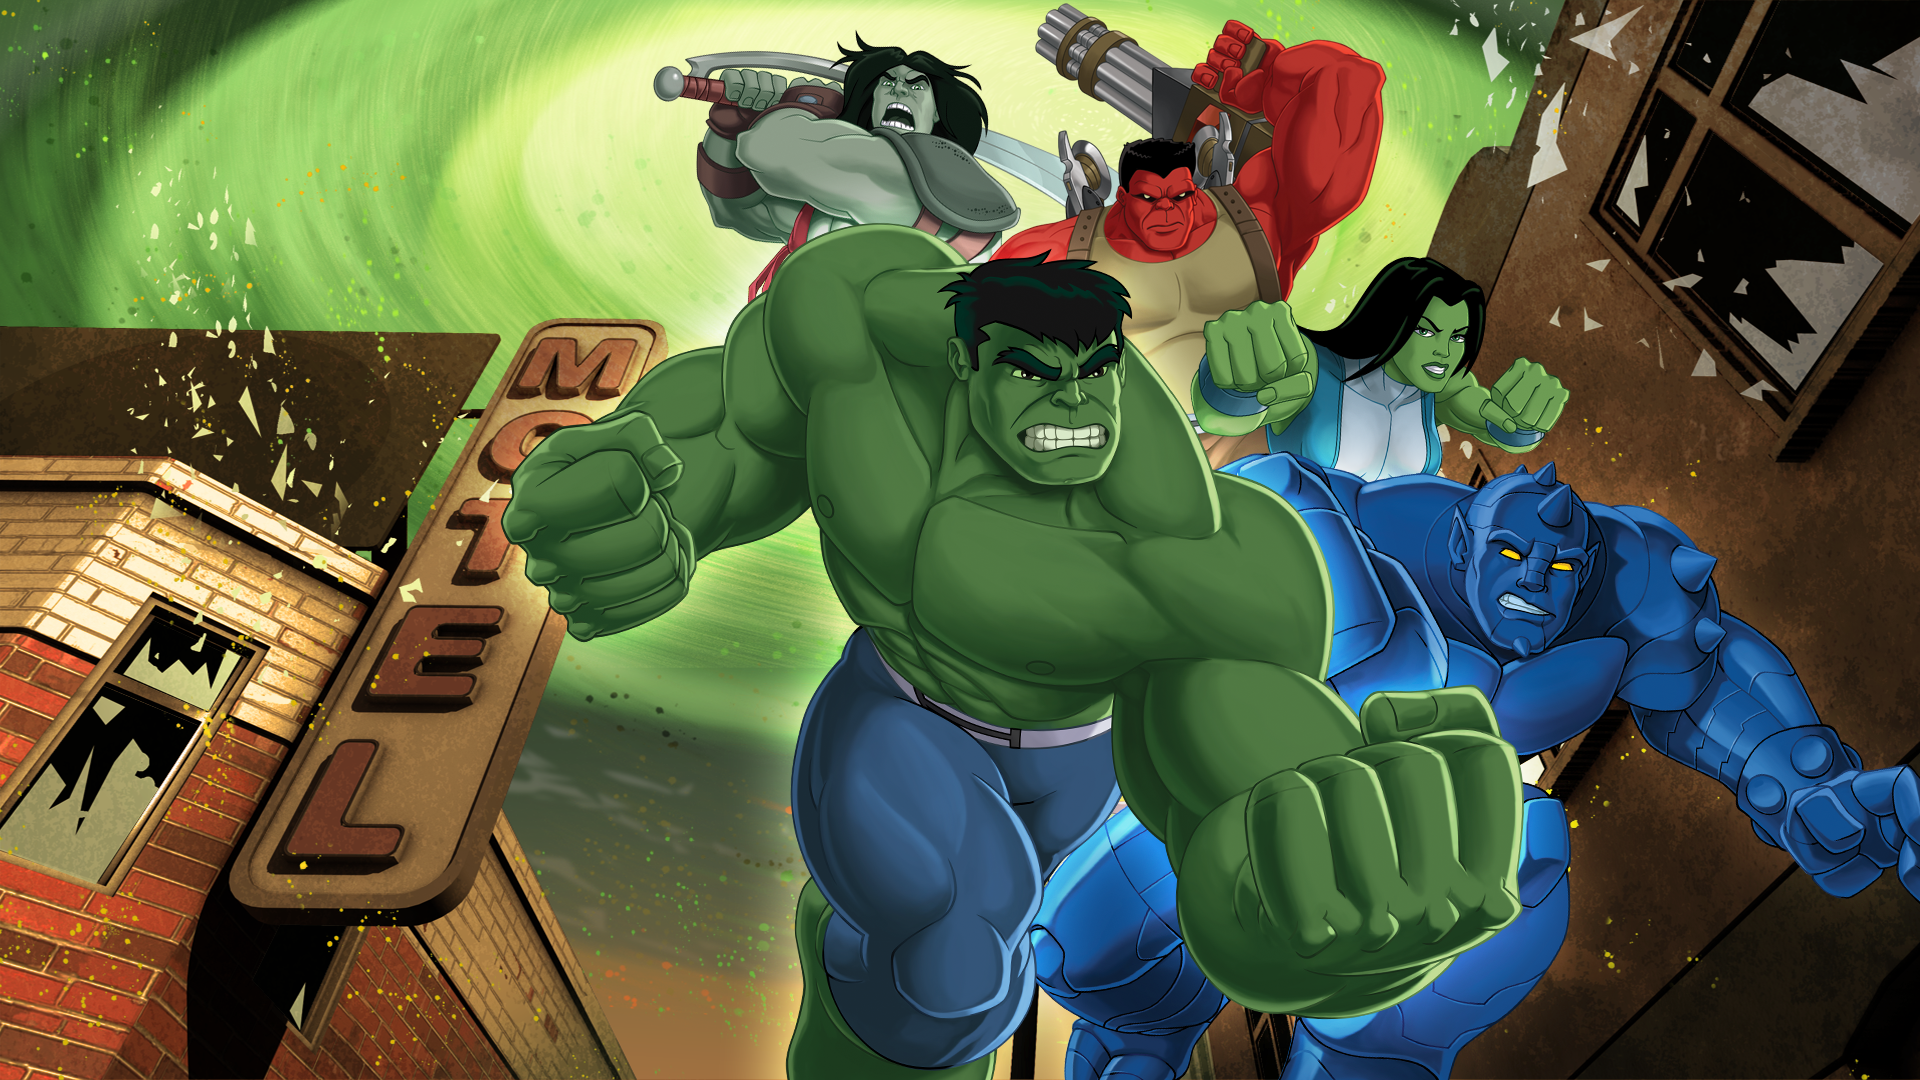 Hulk és a Z.Ú.Z.D.A. ügynökei